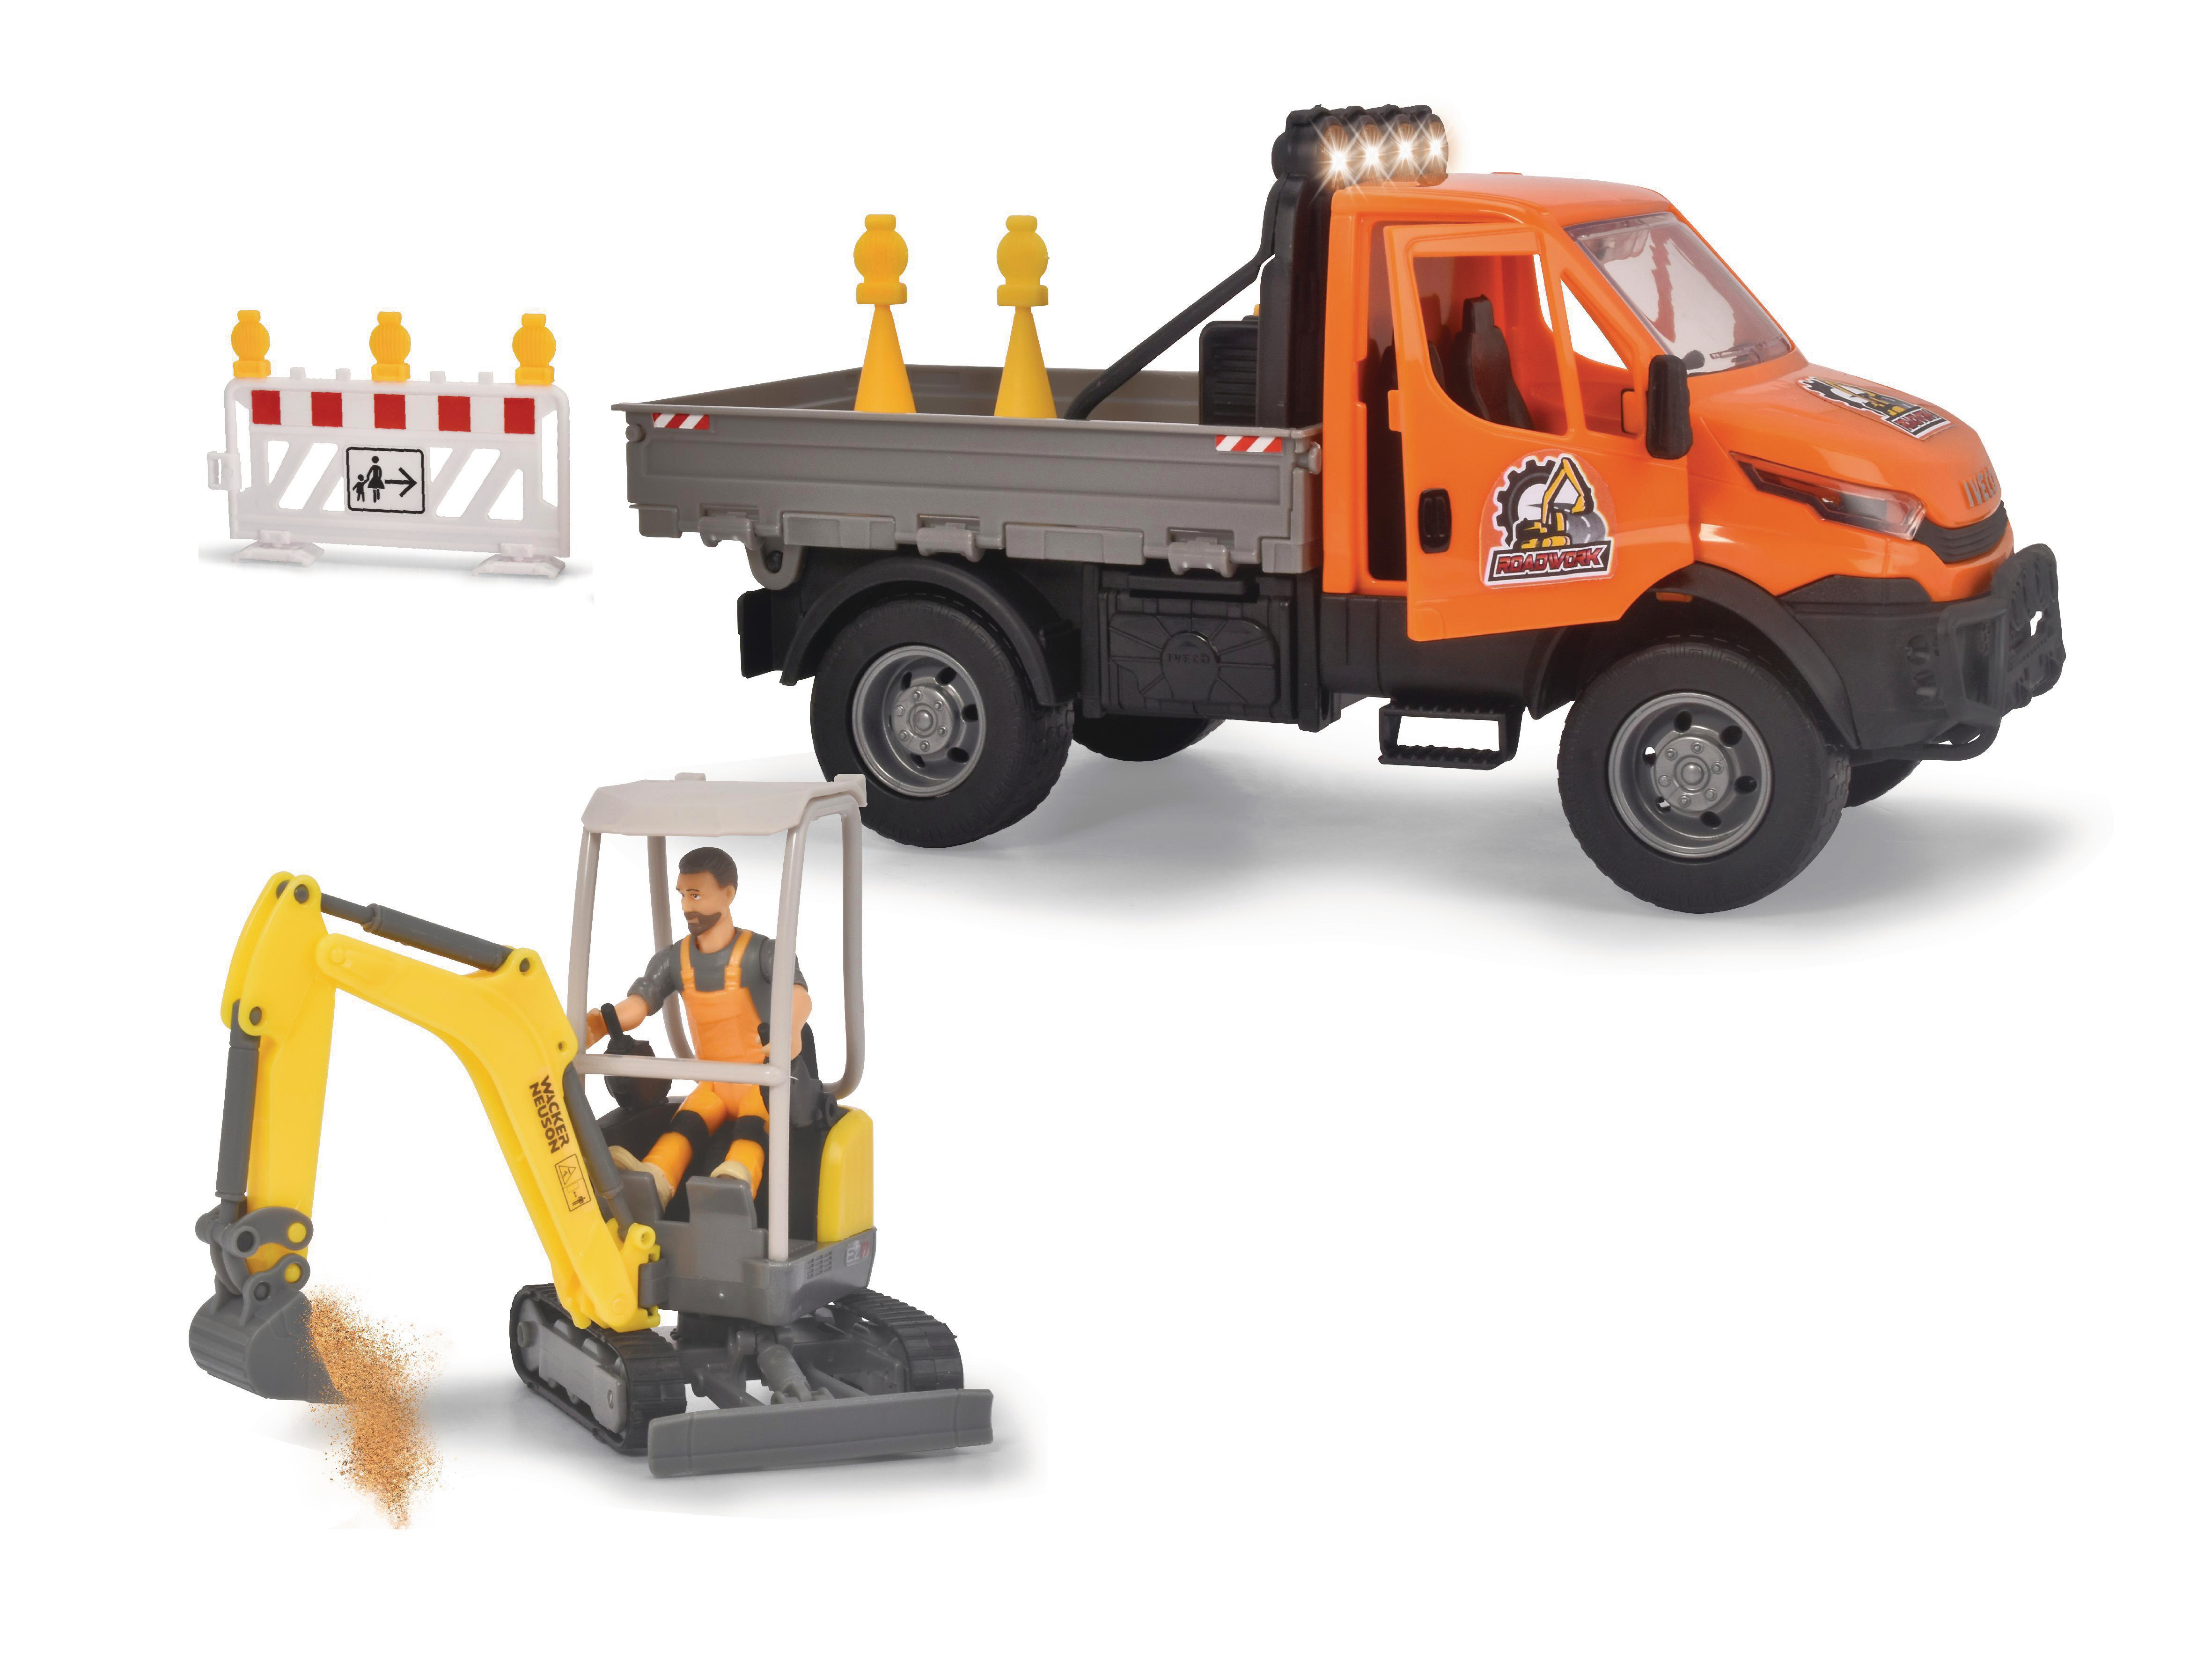 DICKIE-TOYS Straßenbau Set, Iveco Spielzeugauto Anhänger Licht & Truck, Sound Bagger, Mehrfarbig mit